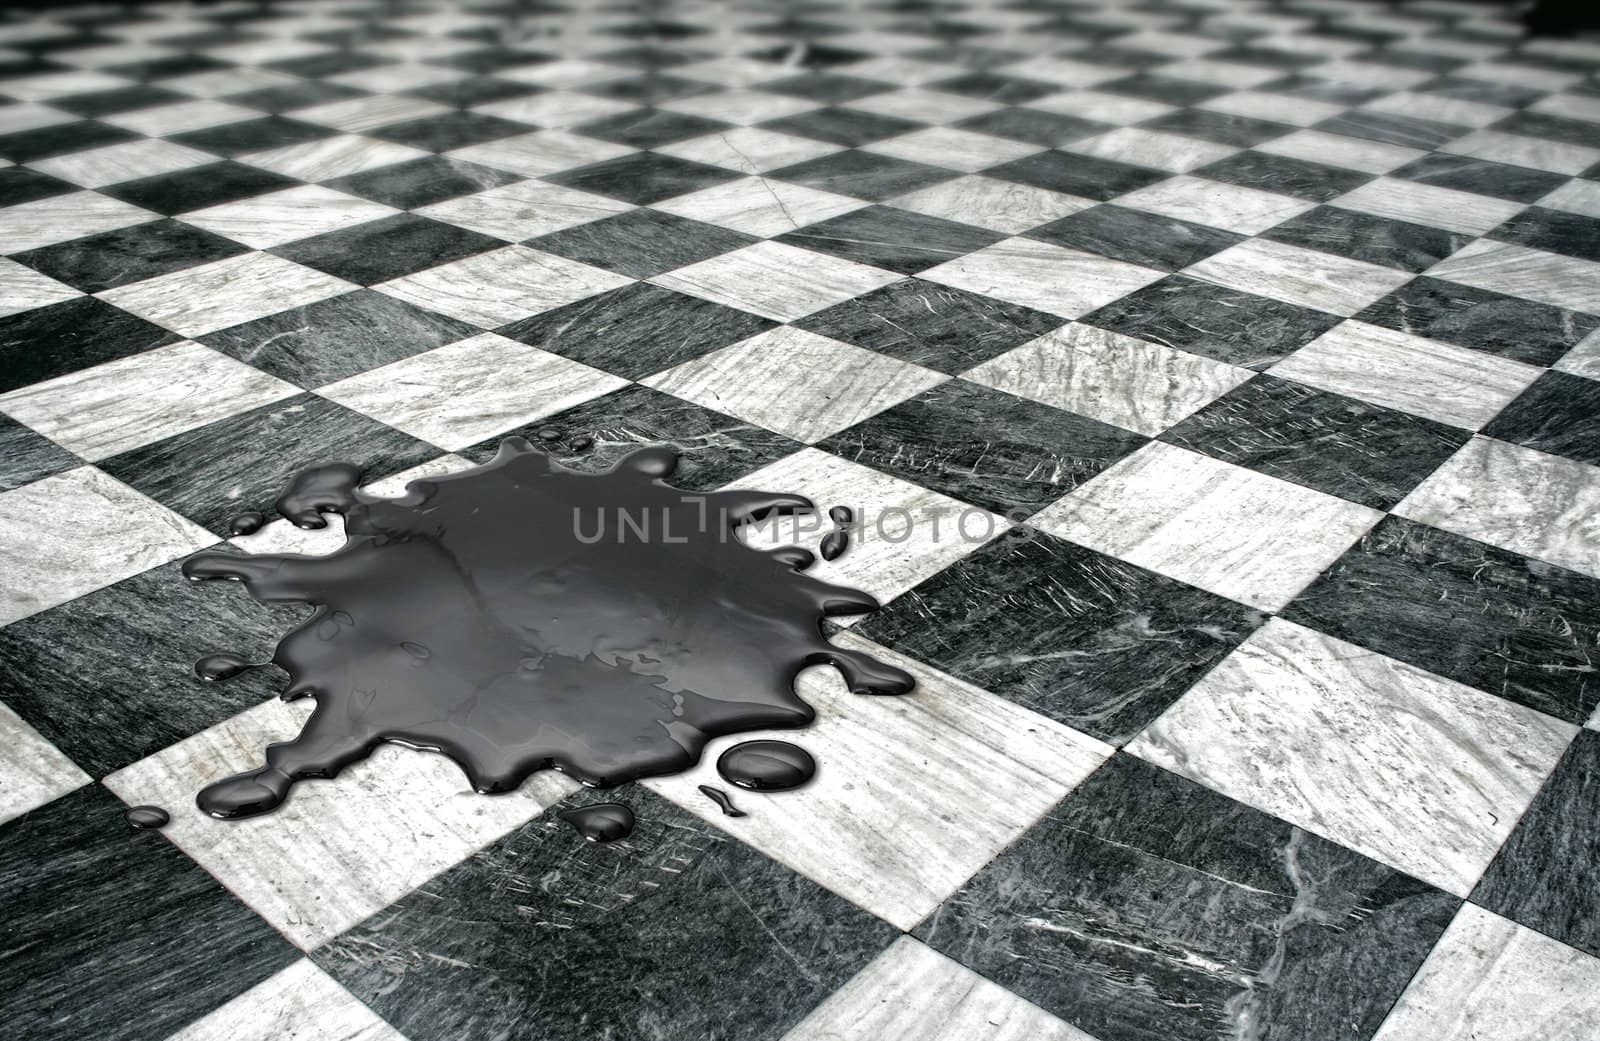 Black oil spilled on checkered marble floor